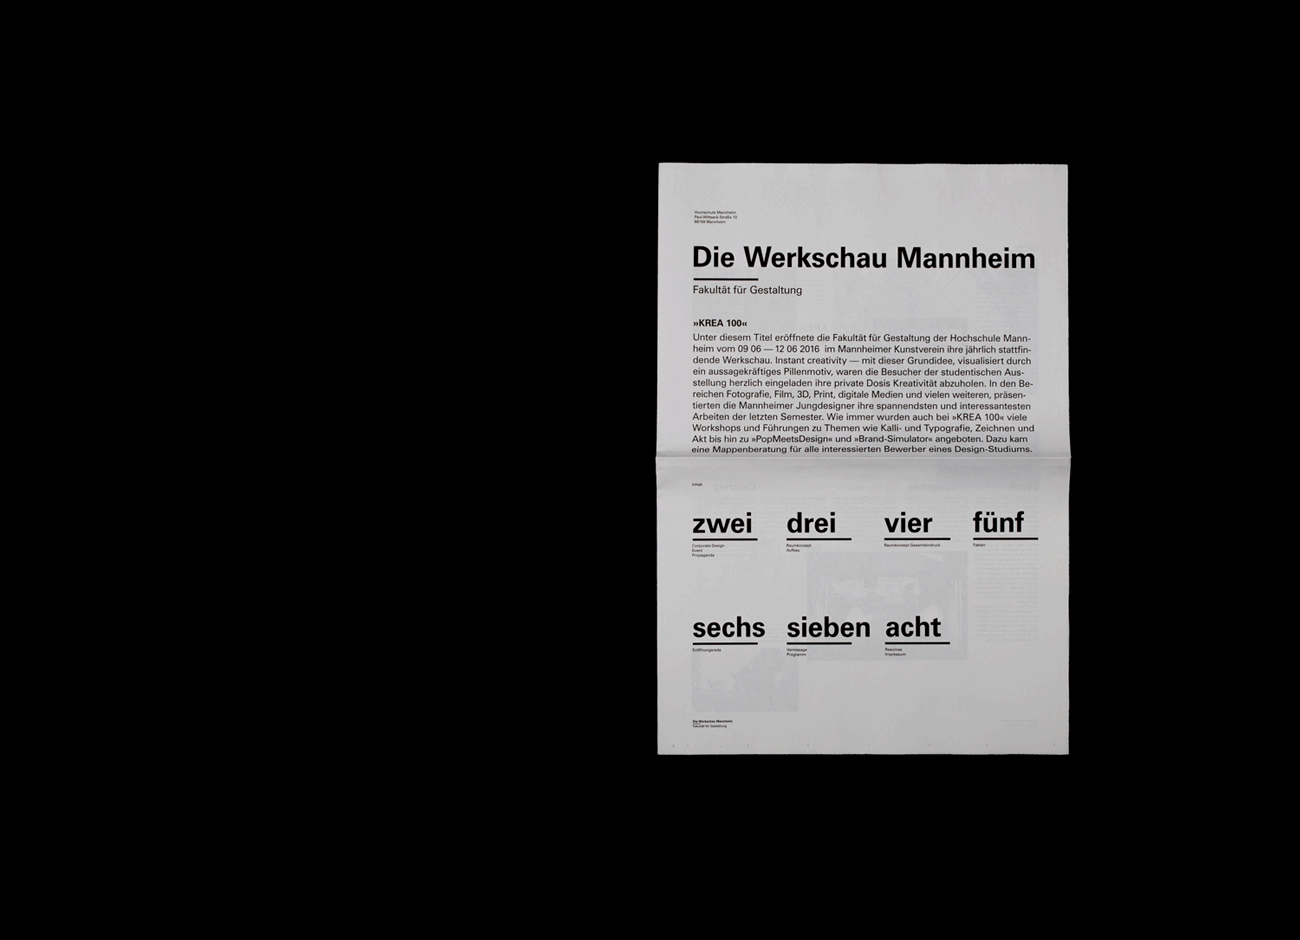 blackwhite sansserif newspaper Communication Design UniversityofAppliedSciencesMannheim Documentary  editorial design  Zurich